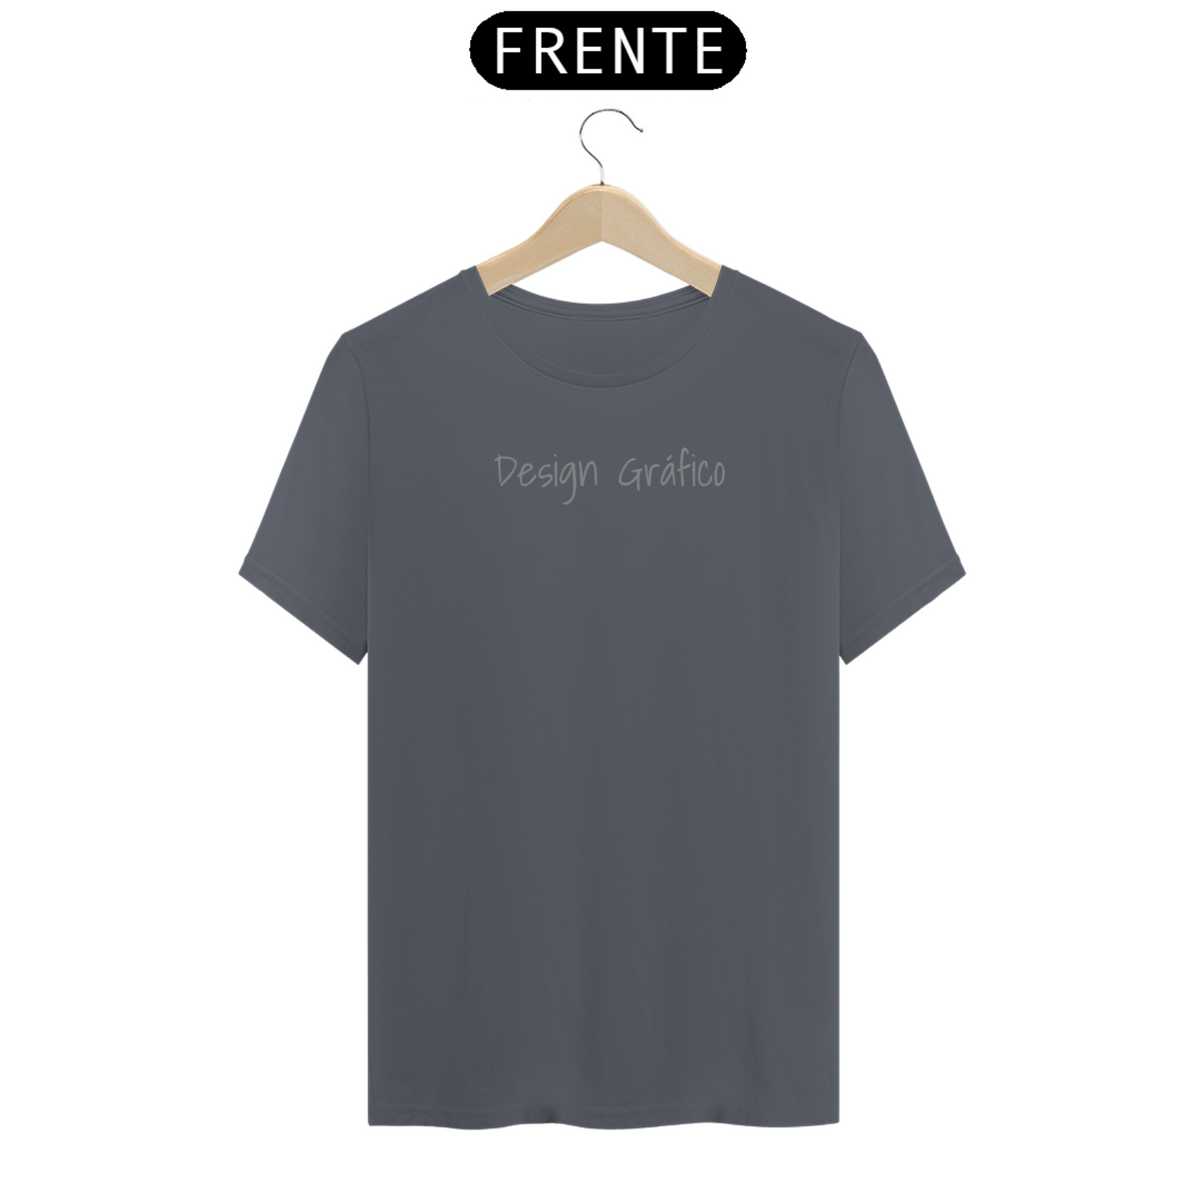 Nome do produto: Camiseta Minimal Profissões Design Gráfico